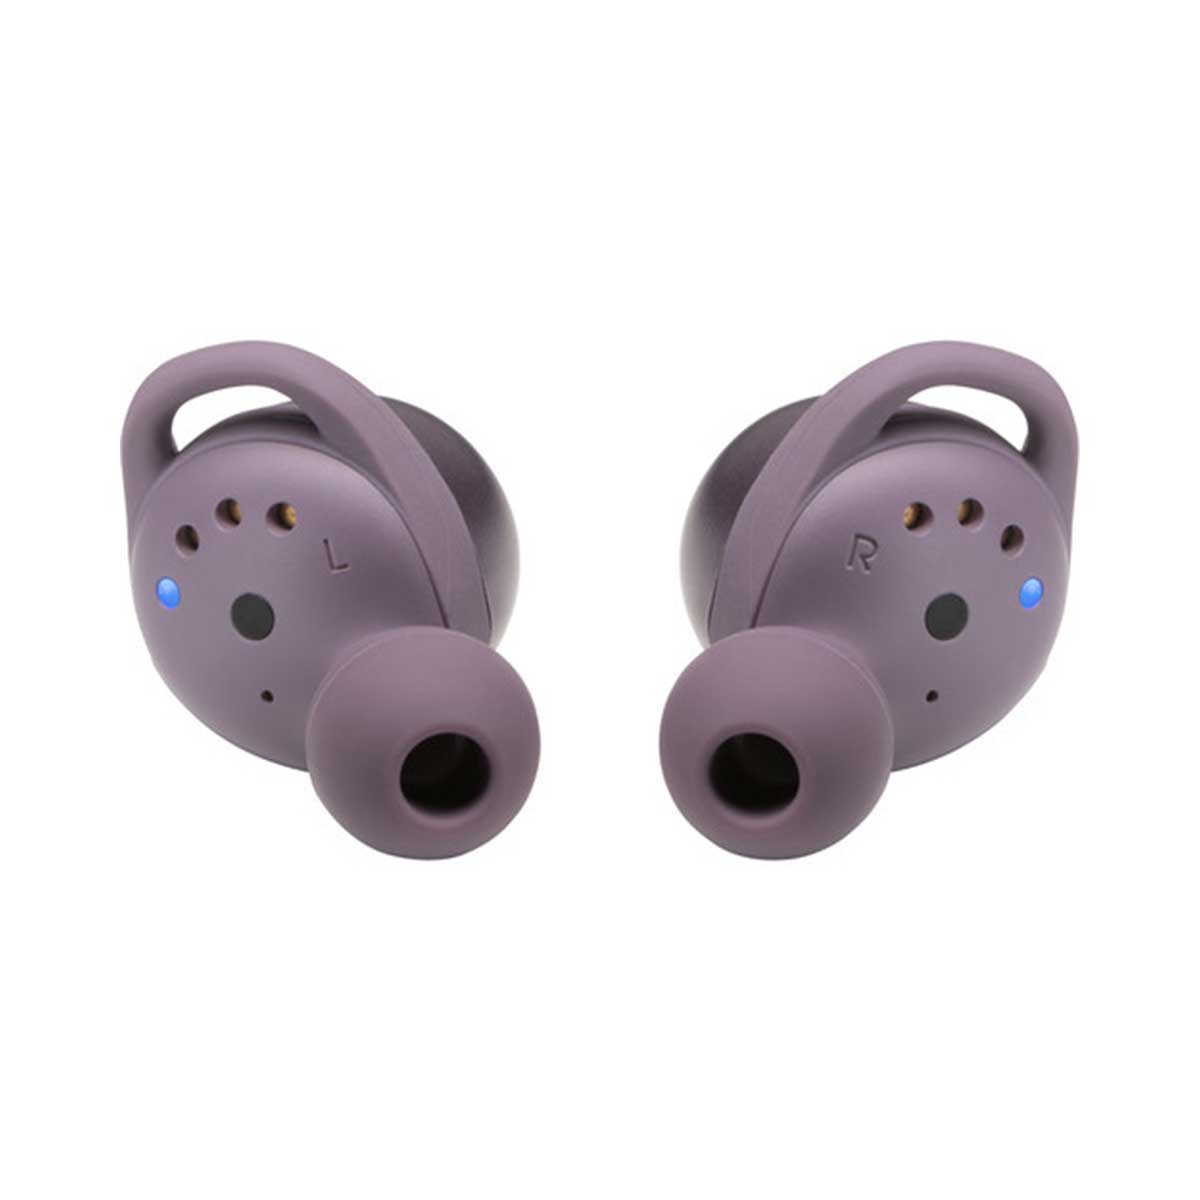 JBL - LIVE 300TWS True Wireless In-Ear Headphones, Purple